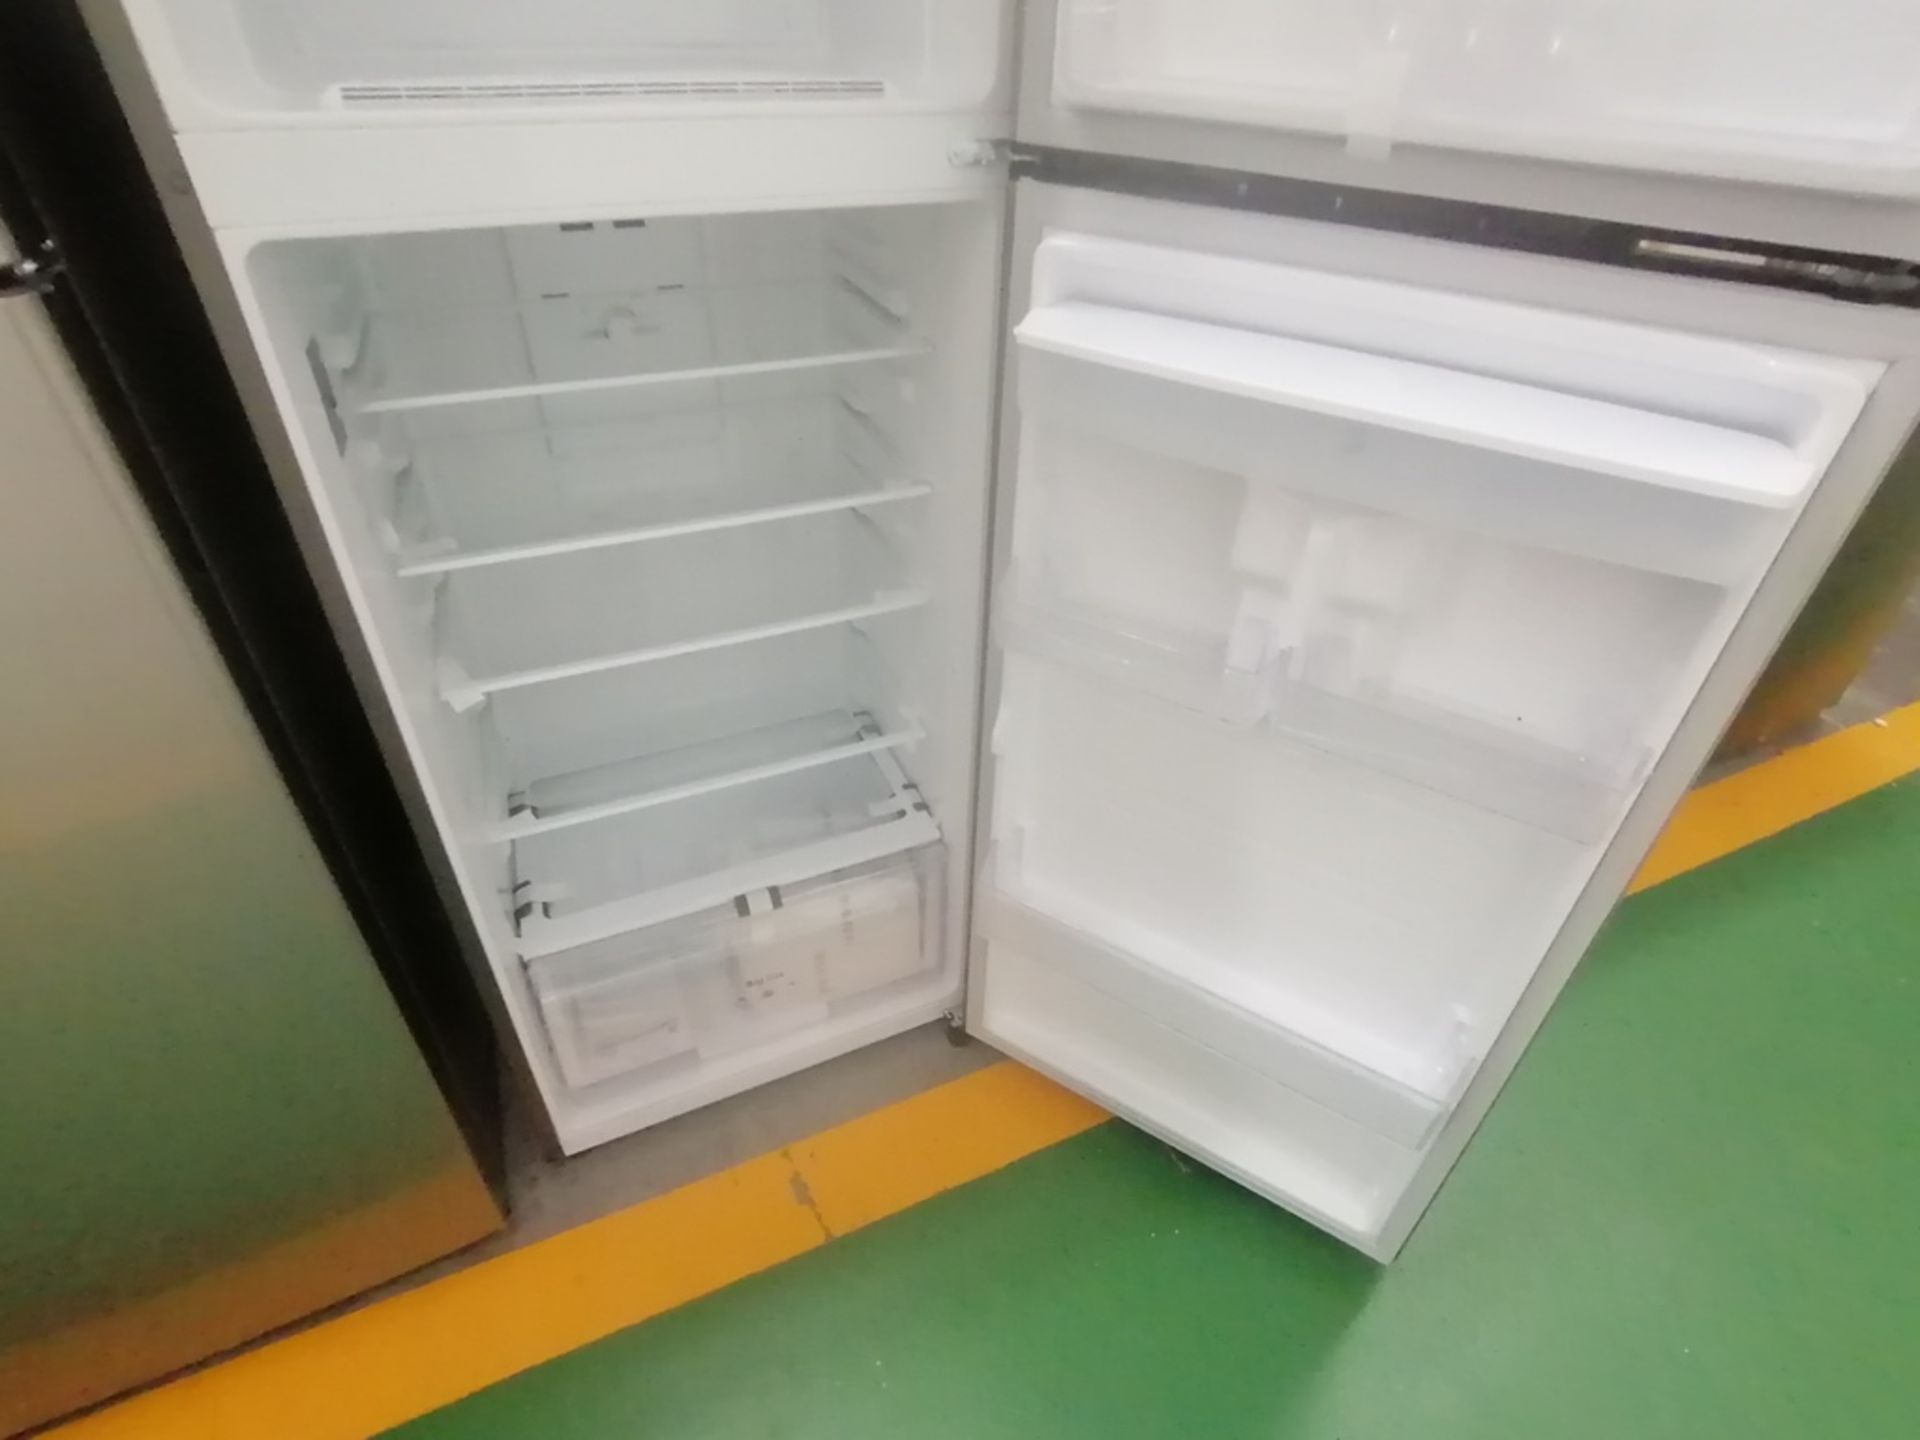 Lote de 2 refrigeradores incluye: 1 Refrigerador con dispensador de agua, Marca Mabe, Modelo RME360 - Image 13 of 15